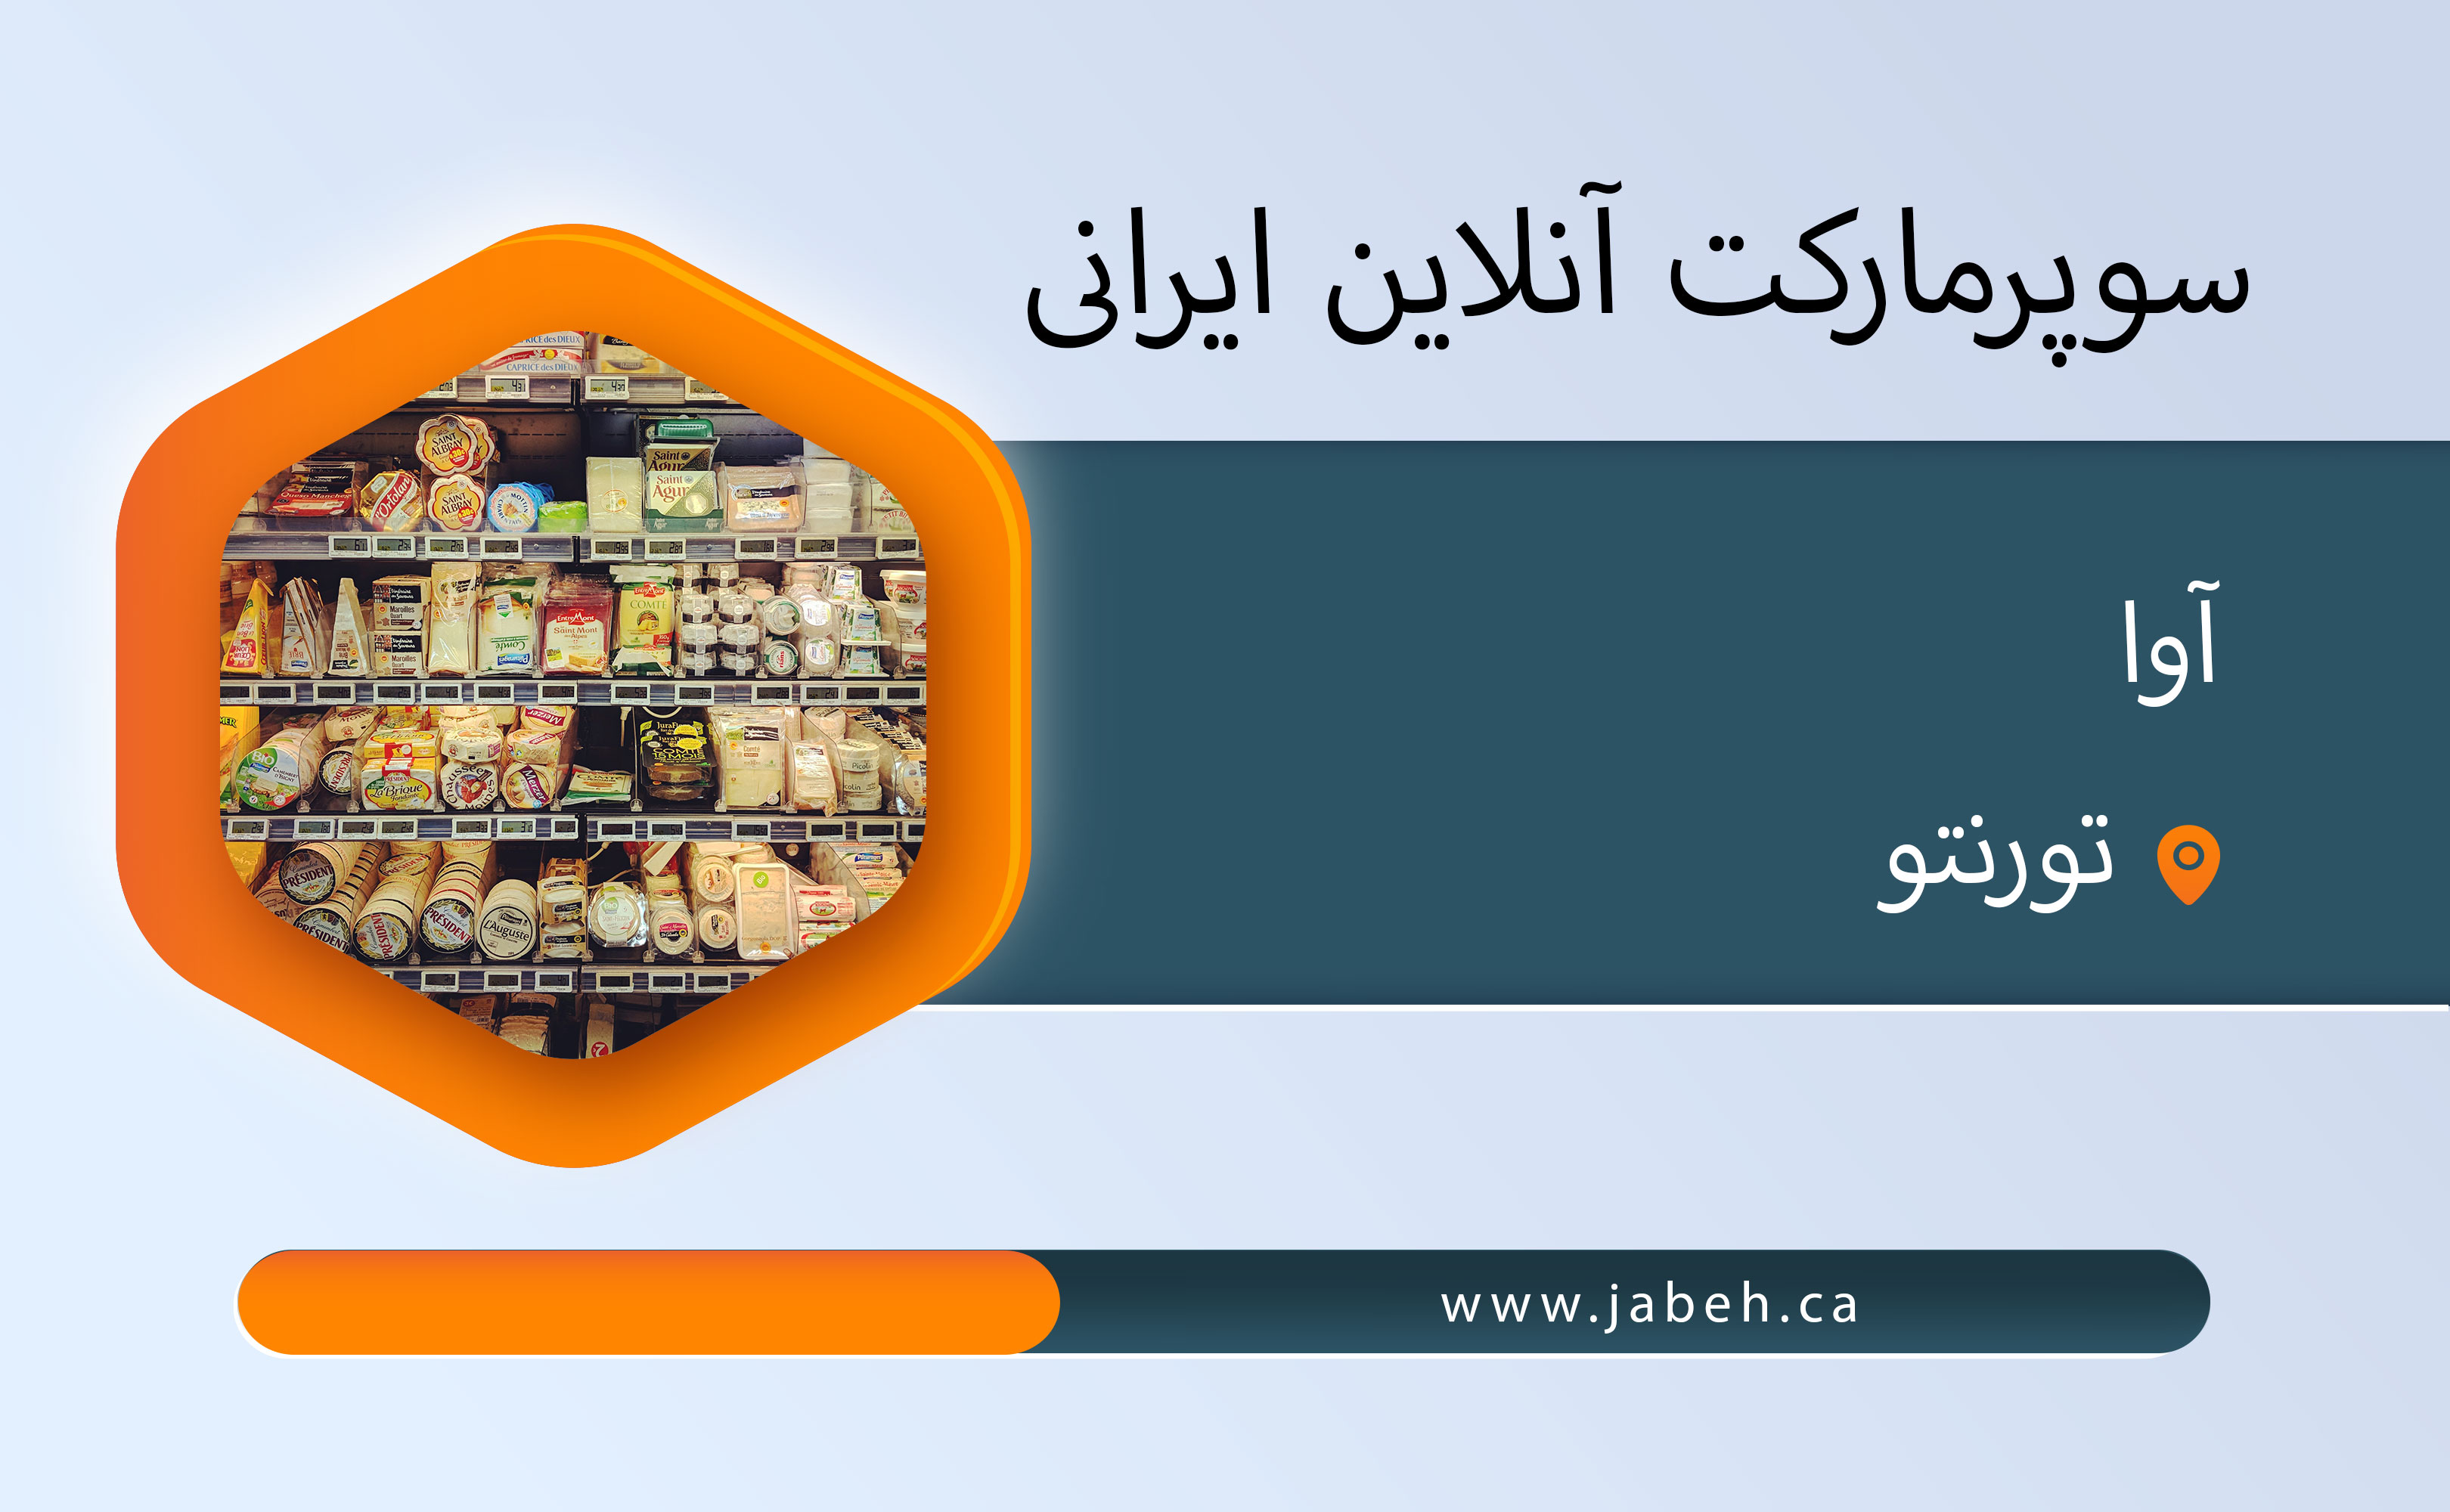 سوپرمارکت آنلاین ایرانی آوا در تورنتو